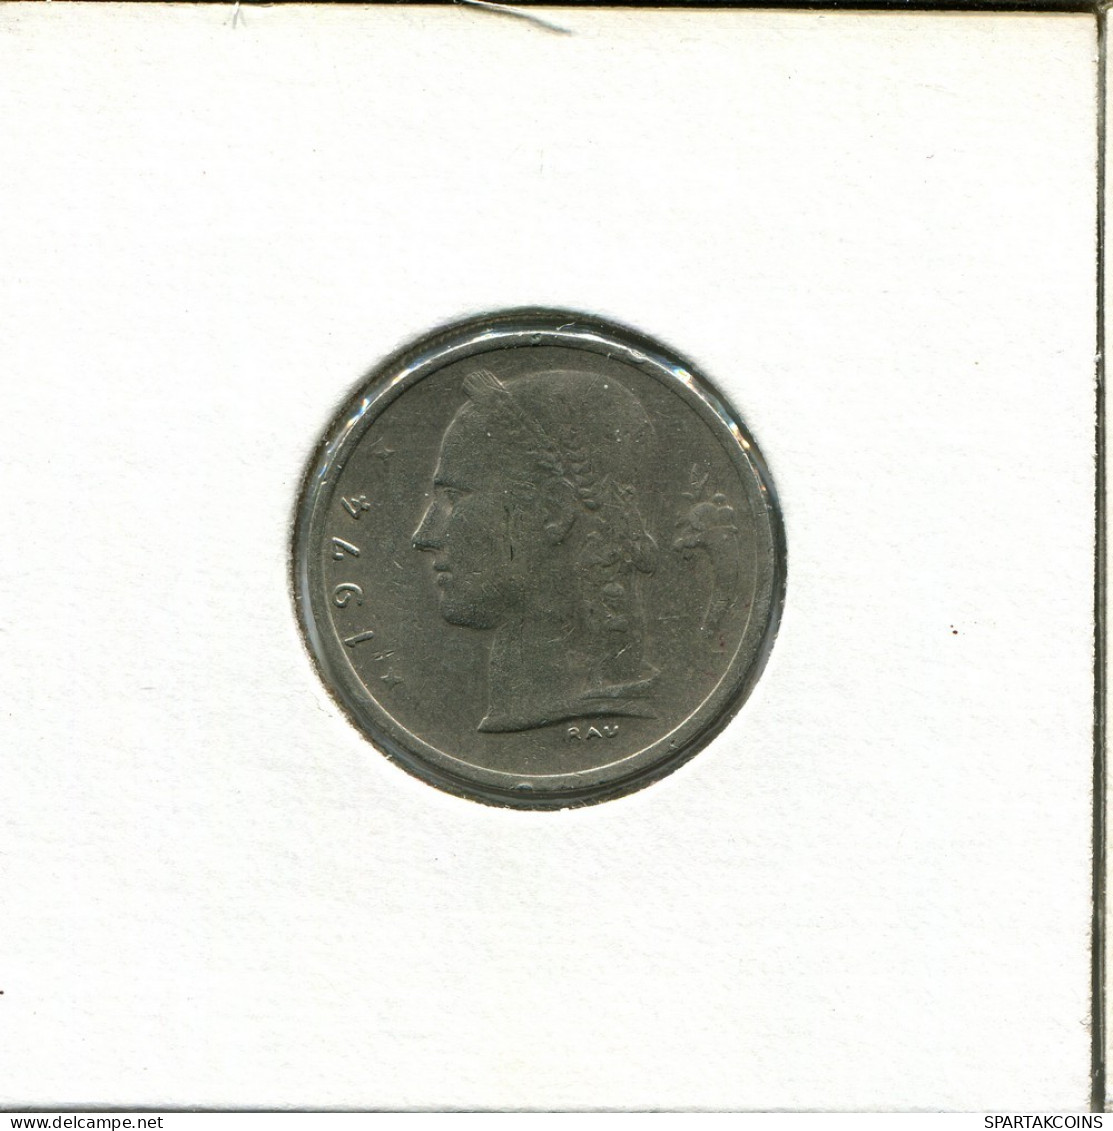 1 FRANC 1974 Französisch Text BELGIEN BELGIUM Münze #AU034.D.A - 1 Franc